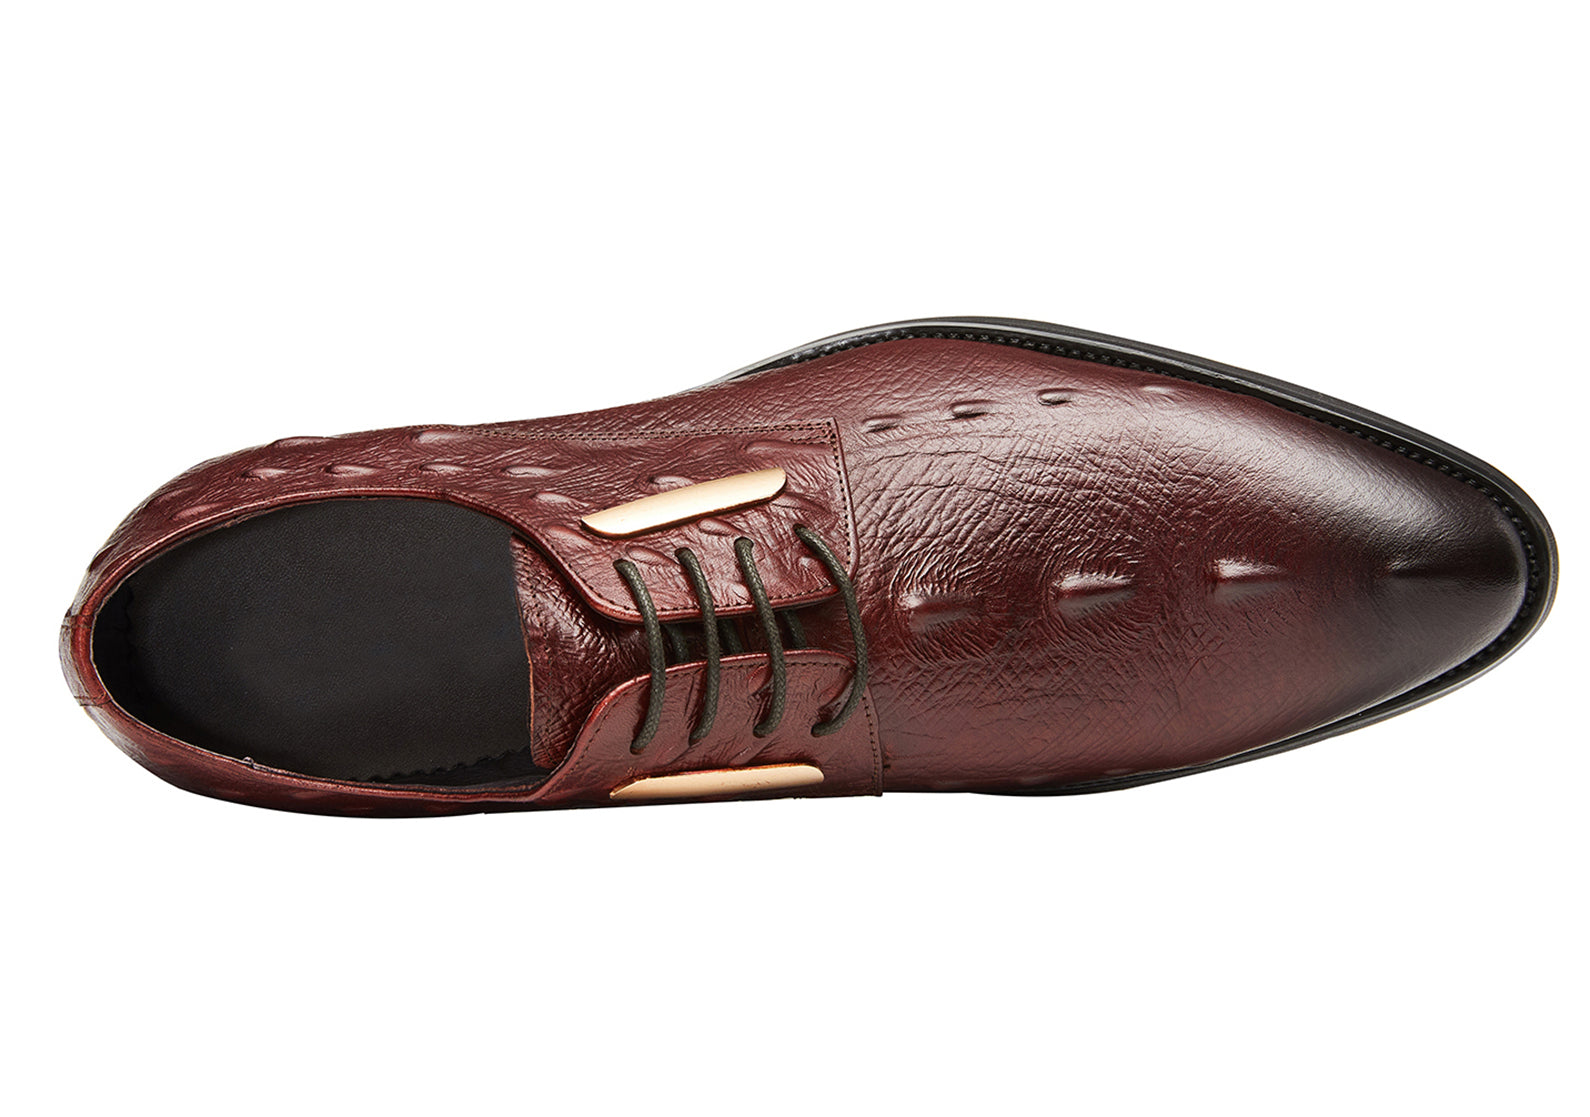 Men's Alligator Wingtip Derby Formal Shoes